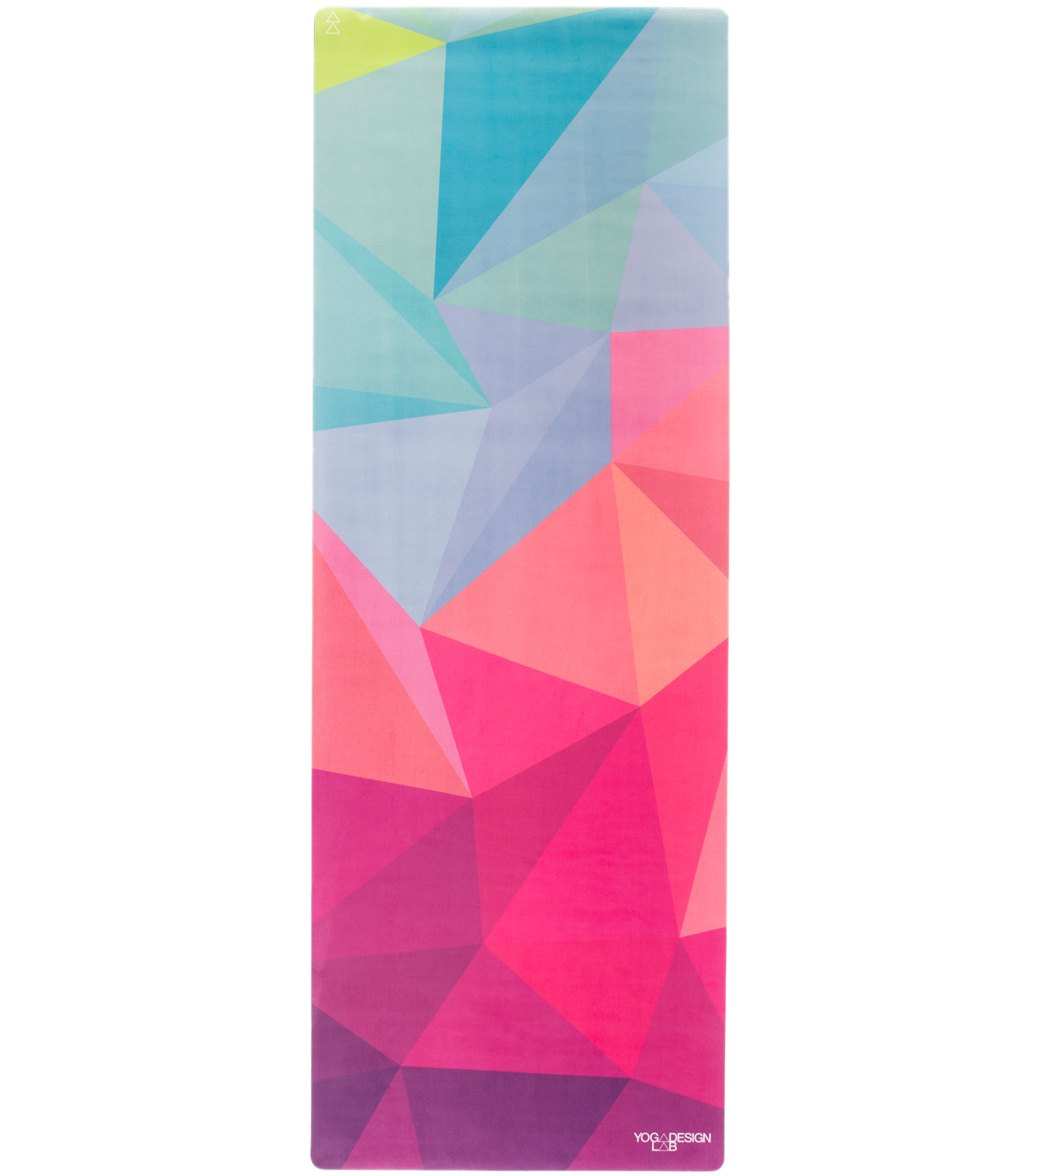 Yoga Design Lab Geo Yoga Mat Towel Combo 70 3.5mm at